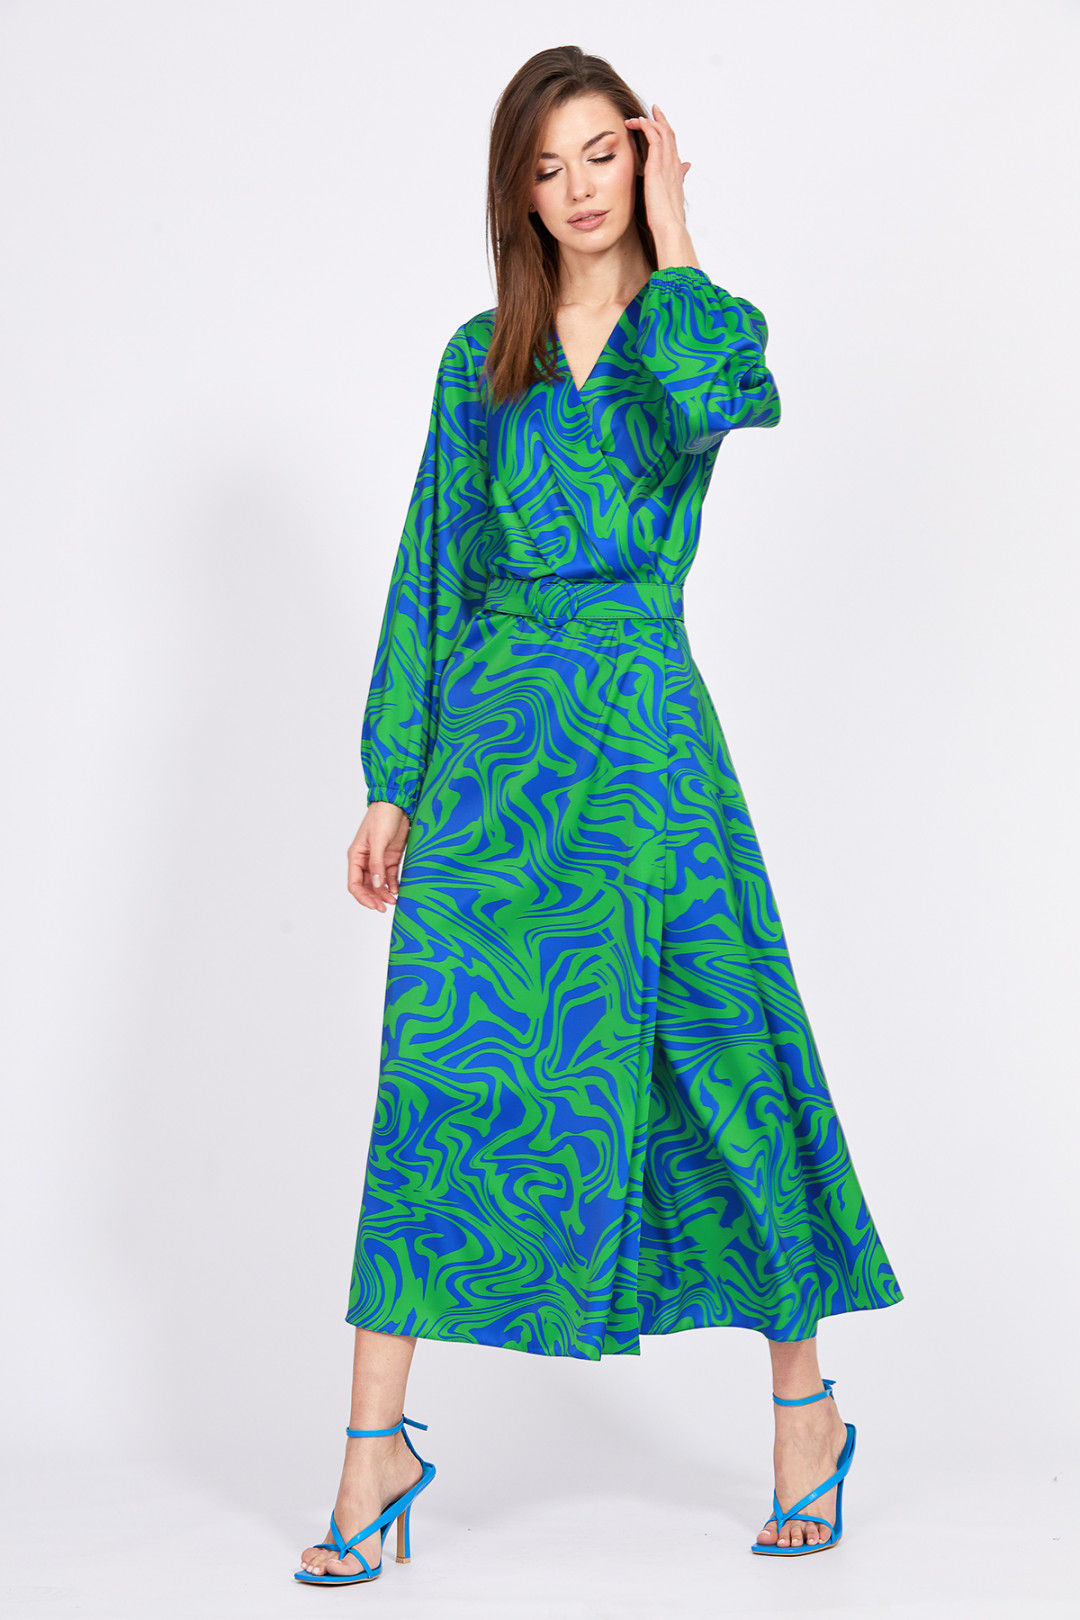 Платье Эола Стиль 2401 зеленый/ василек